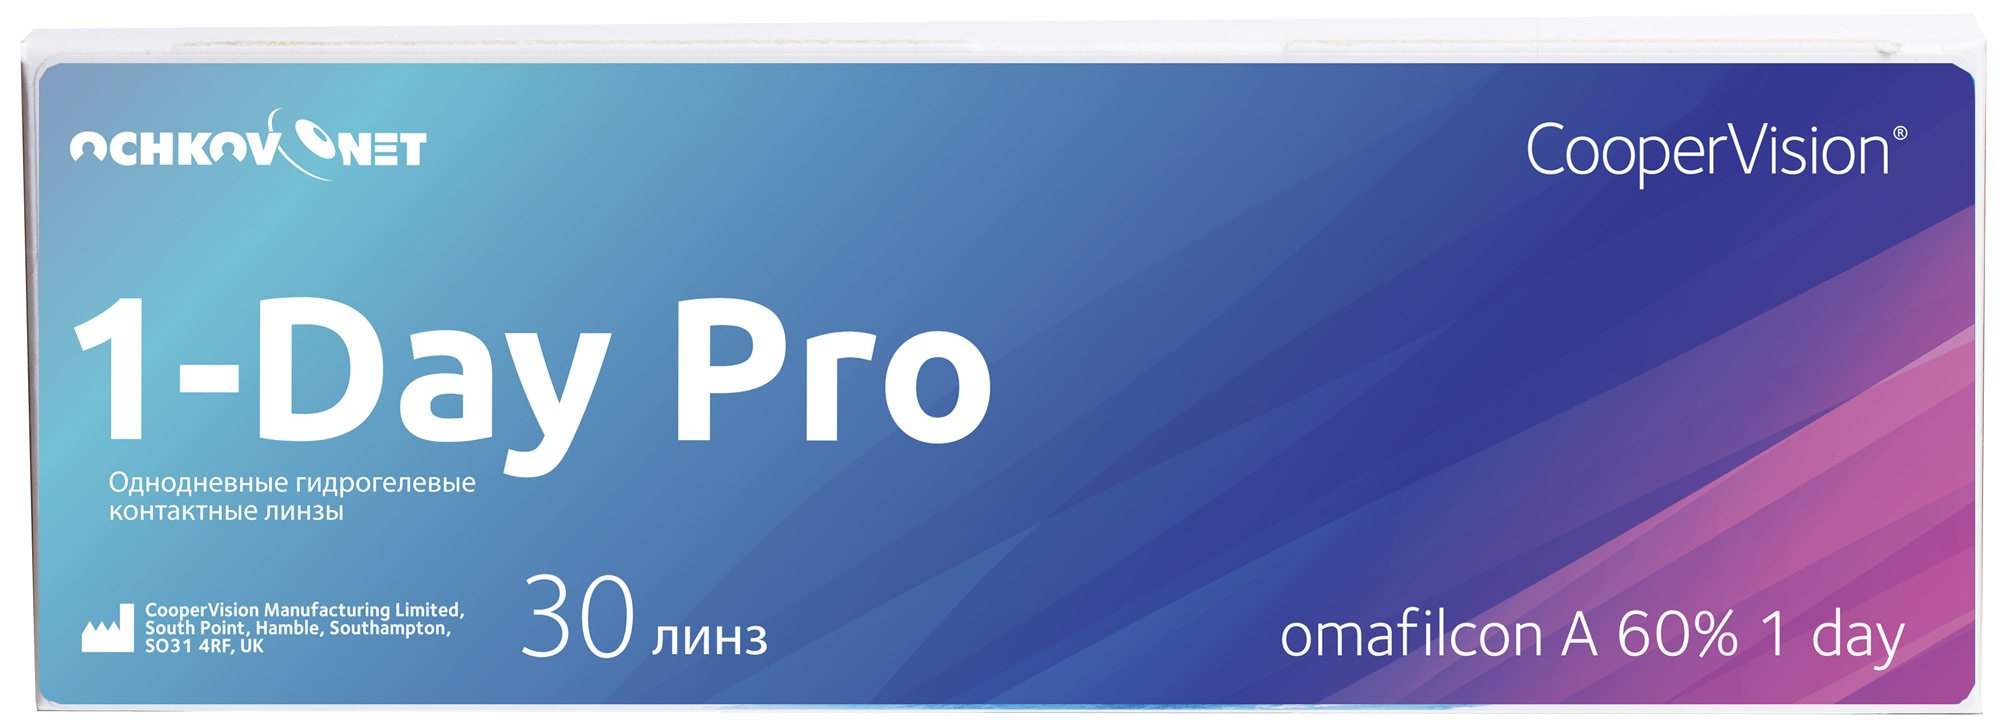 Контактные линзы Ochkov.Net 1-Day Pro 30 линз 8.7, -4.5  - купить